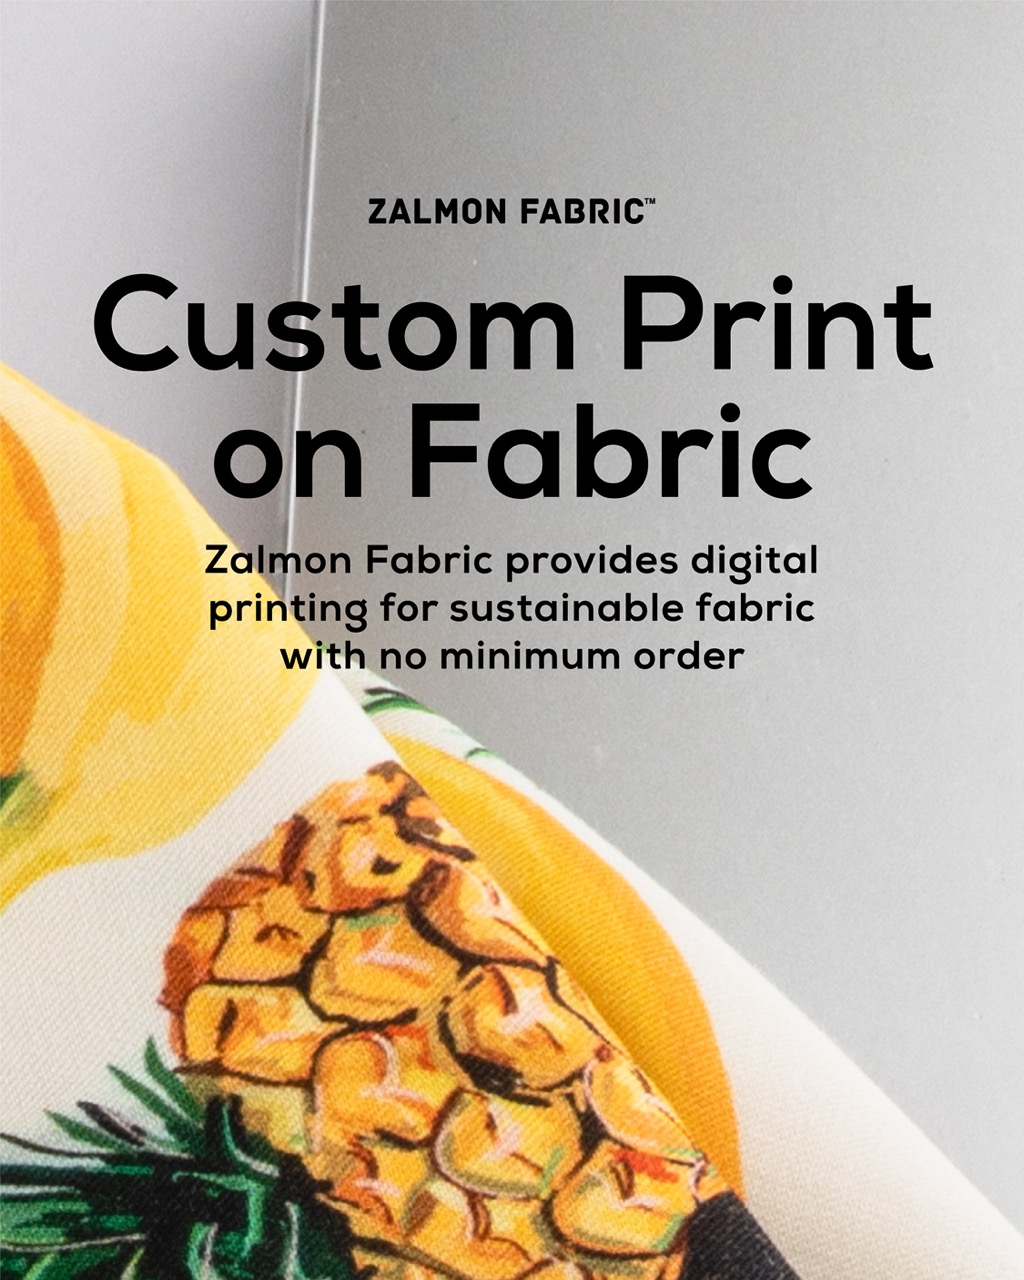 Zalmon Fabric